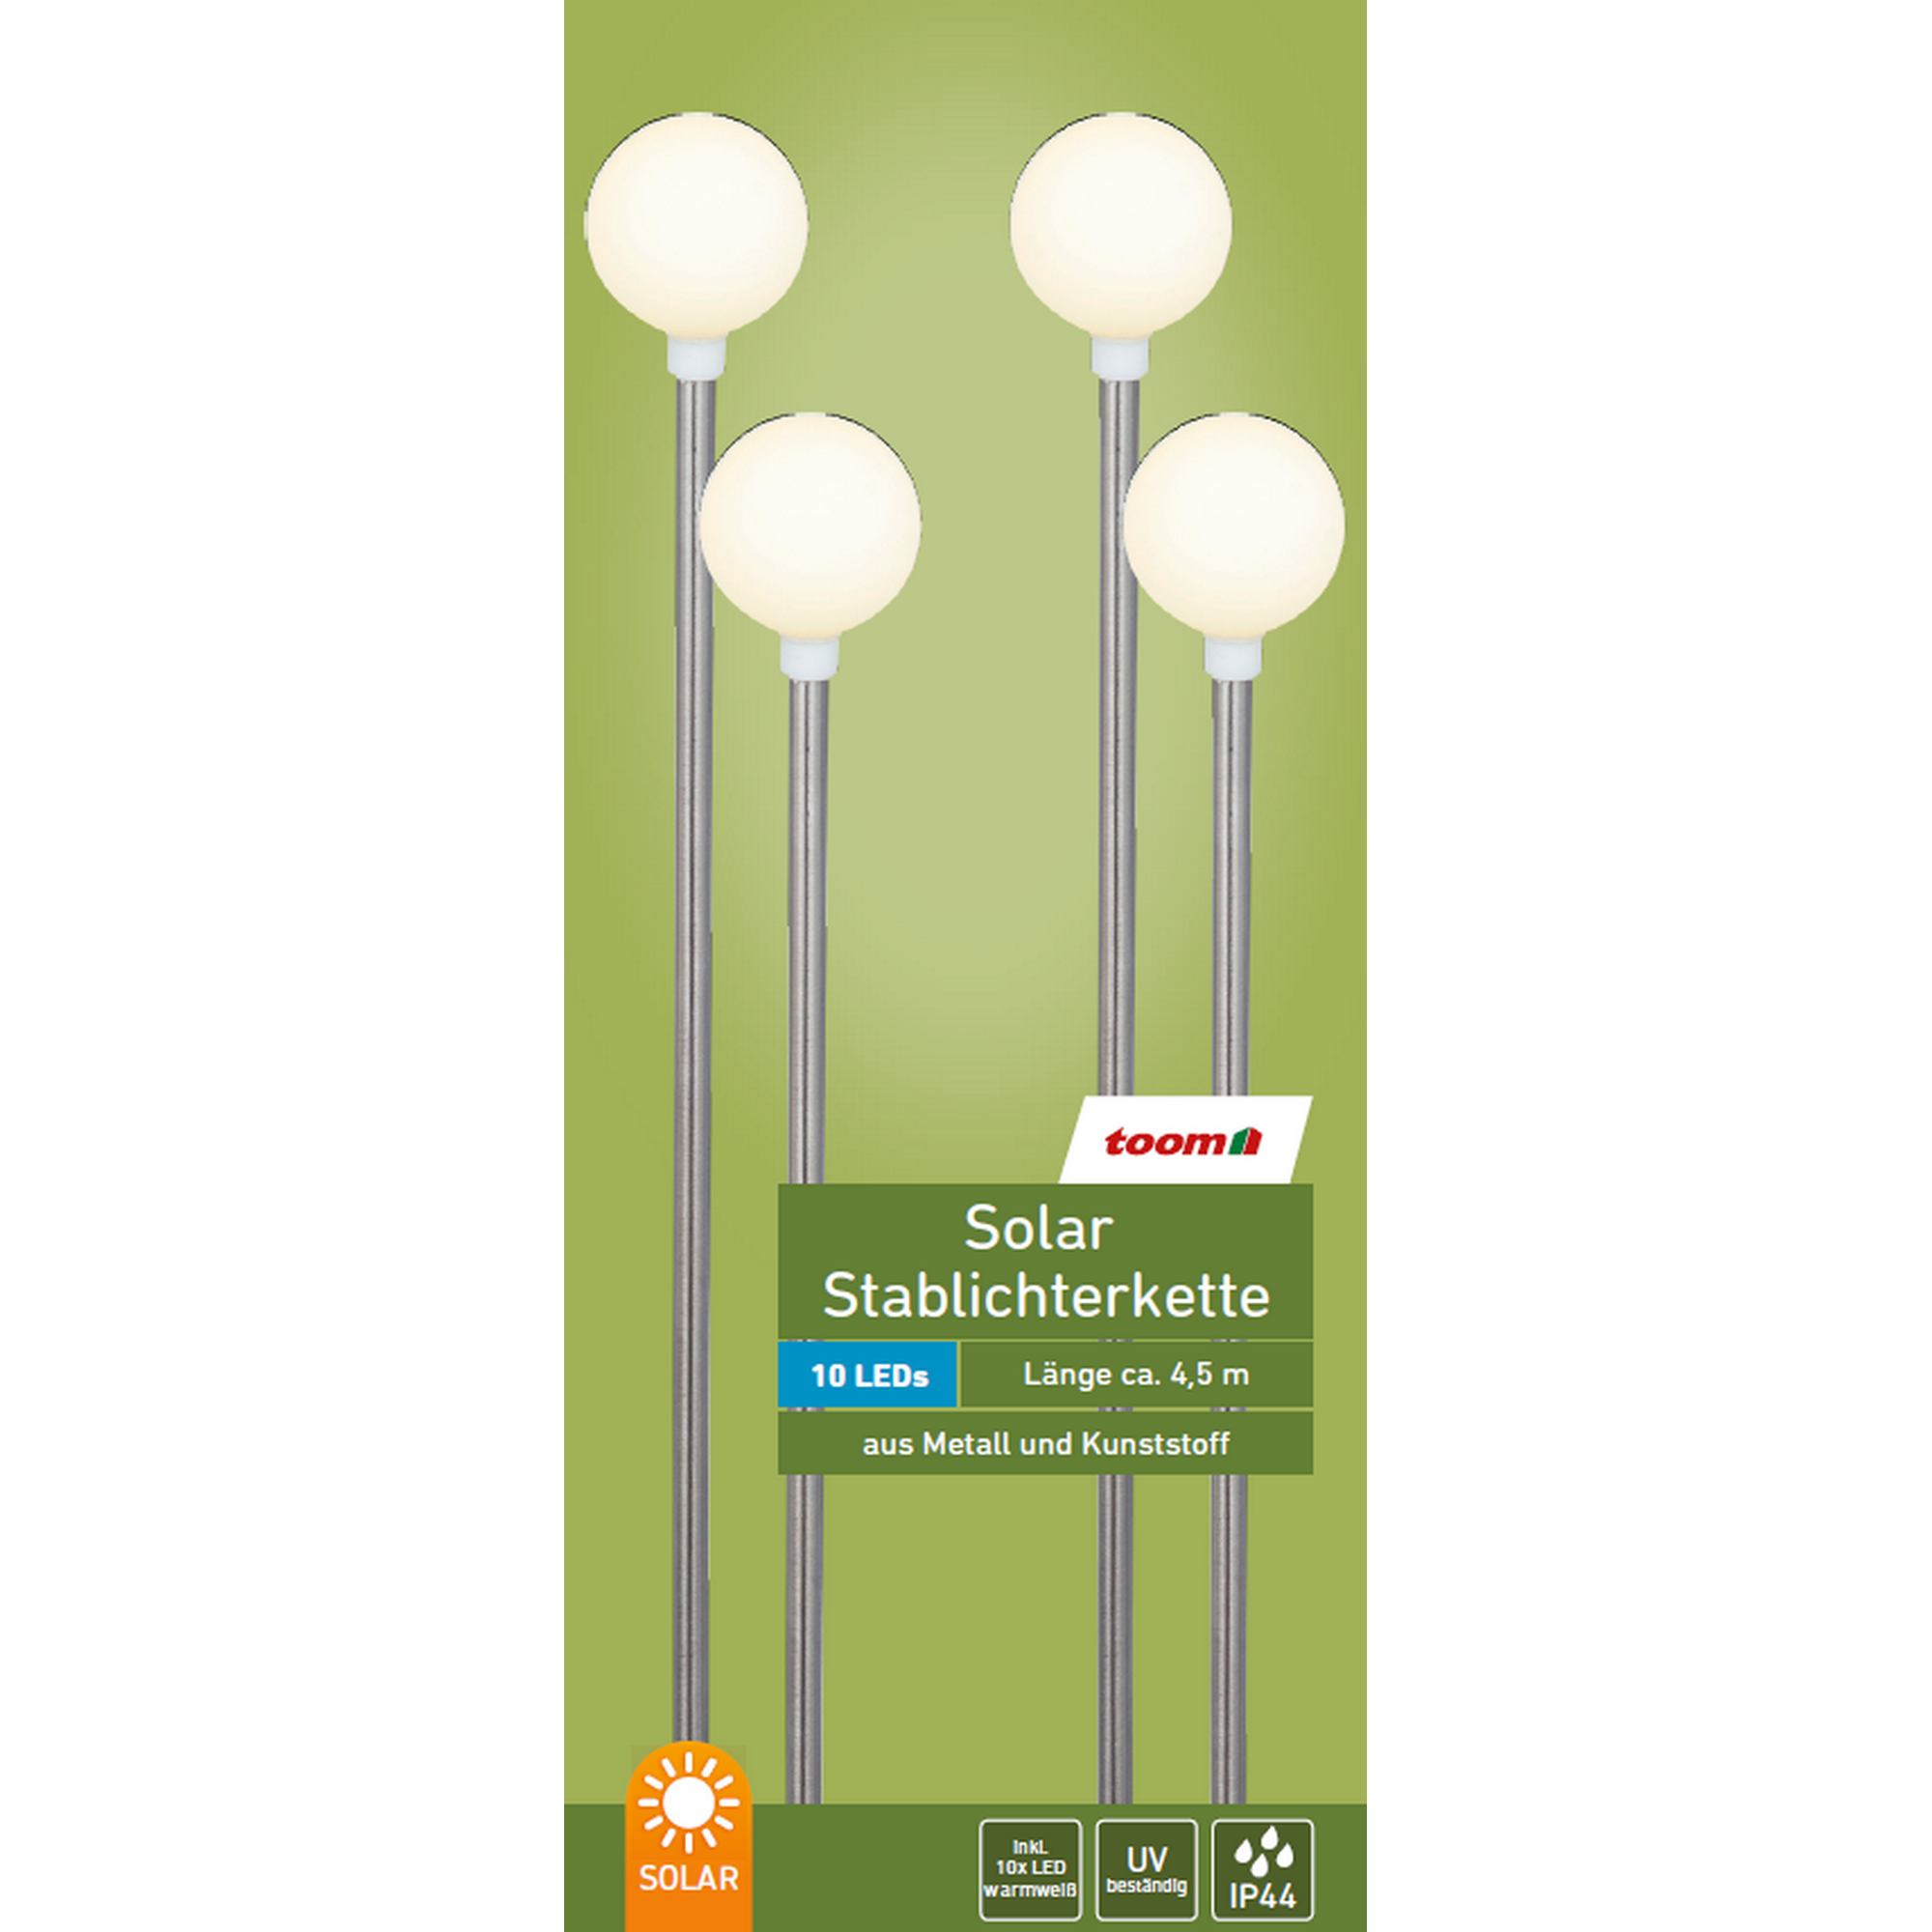 Solar-Stablichterkette 10 LEDs weiß/silbern 350 cm + product picture